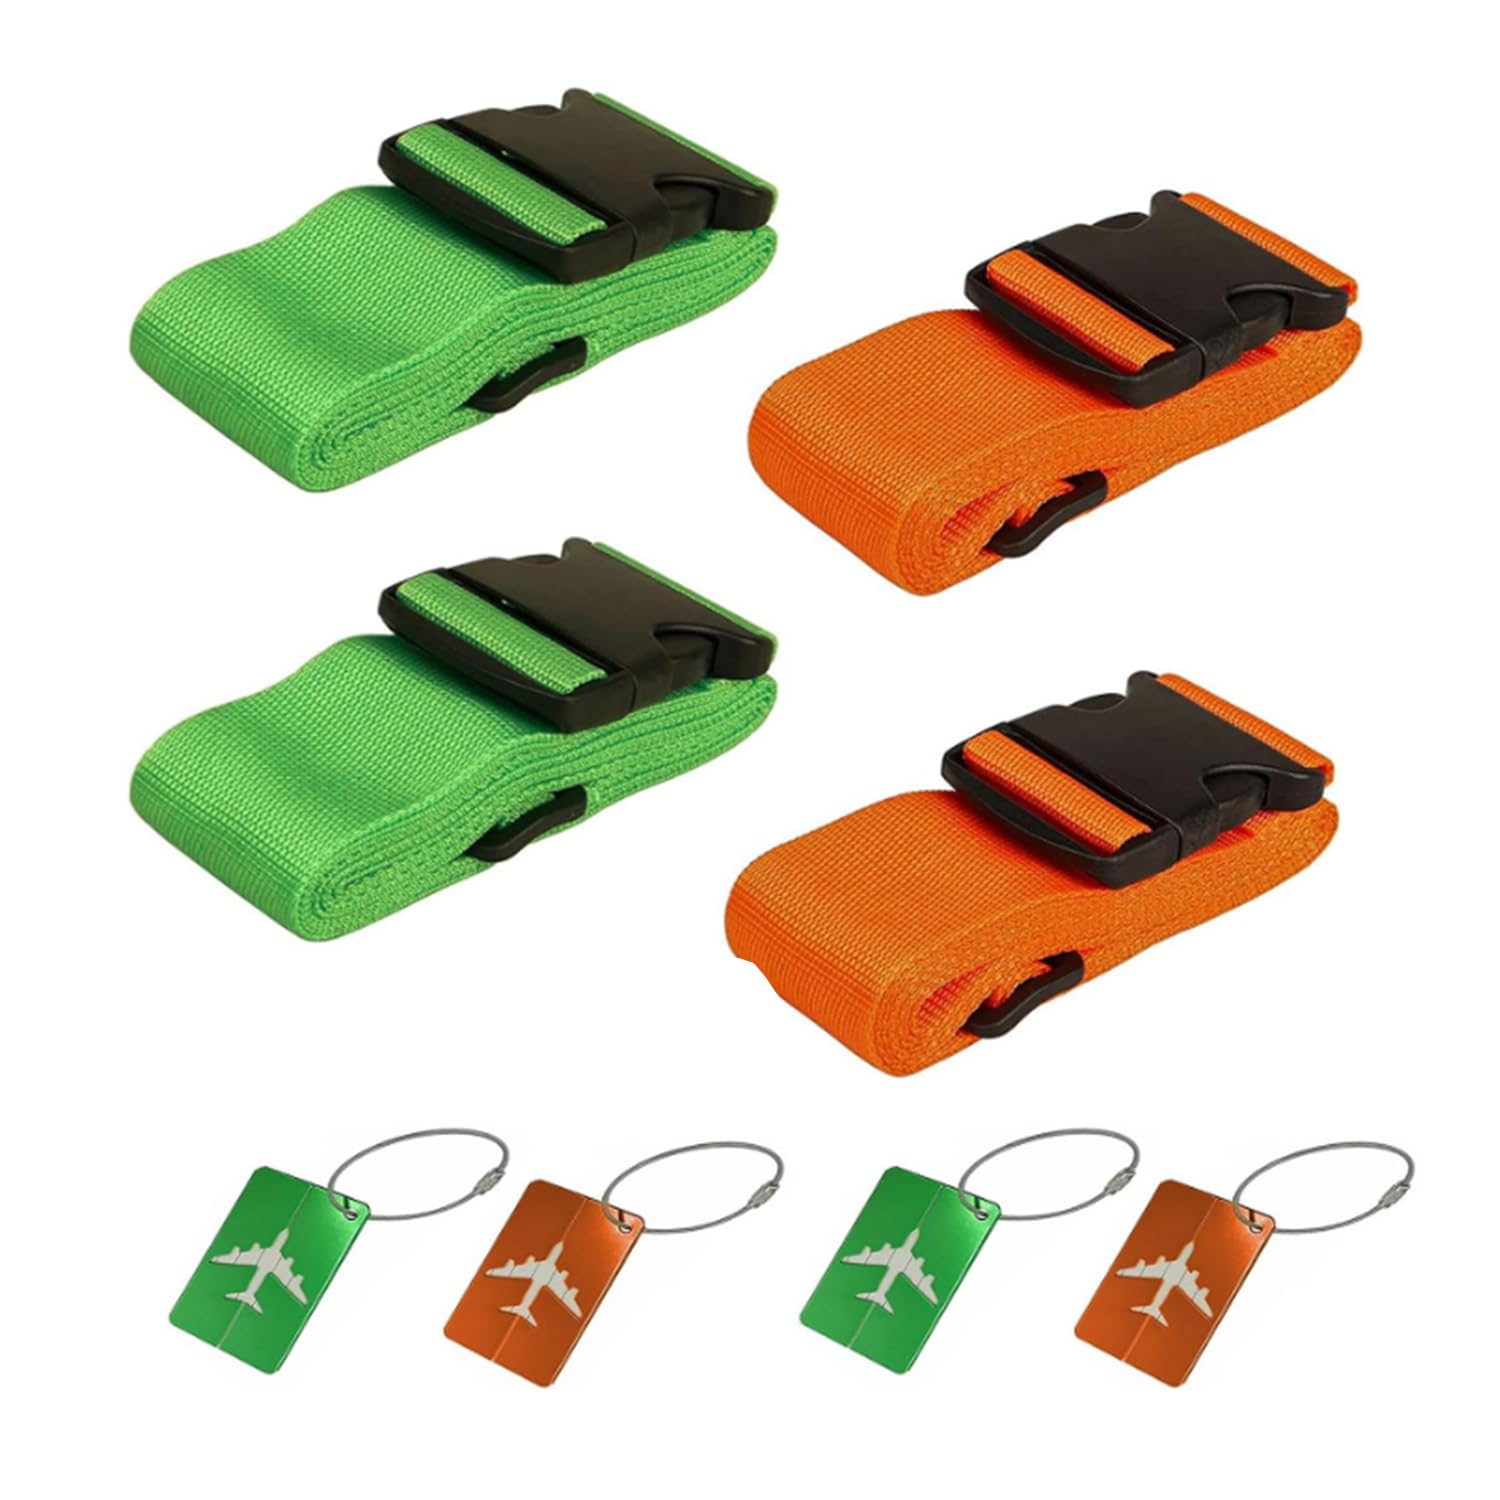 Koffergurt Grün Orange Kofferband Gurt - 4 Sets Einstellbare Gepäckgurt und Aluminium Kofferanhänger mit Adressschild - Sicher Koffer Gurtband für Reisen Schnell Erkennen Koffergürtel von ANBOWEI